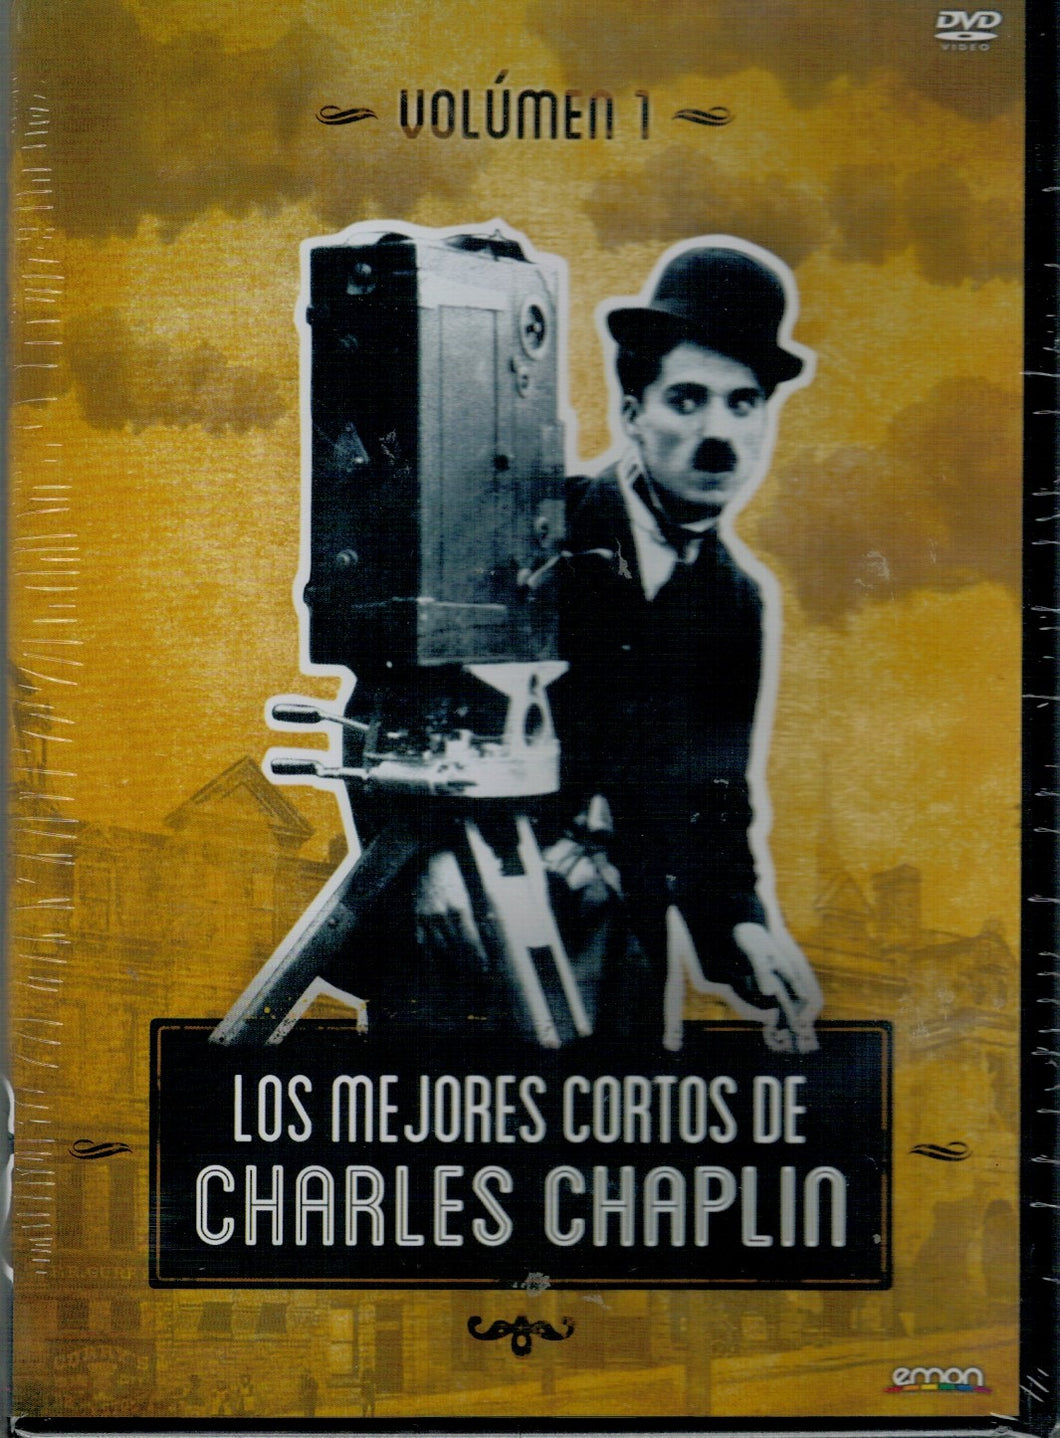 Los mejores cortos de CHARLES CHAPLIN - Volumen 1 (DVD Nuevo)